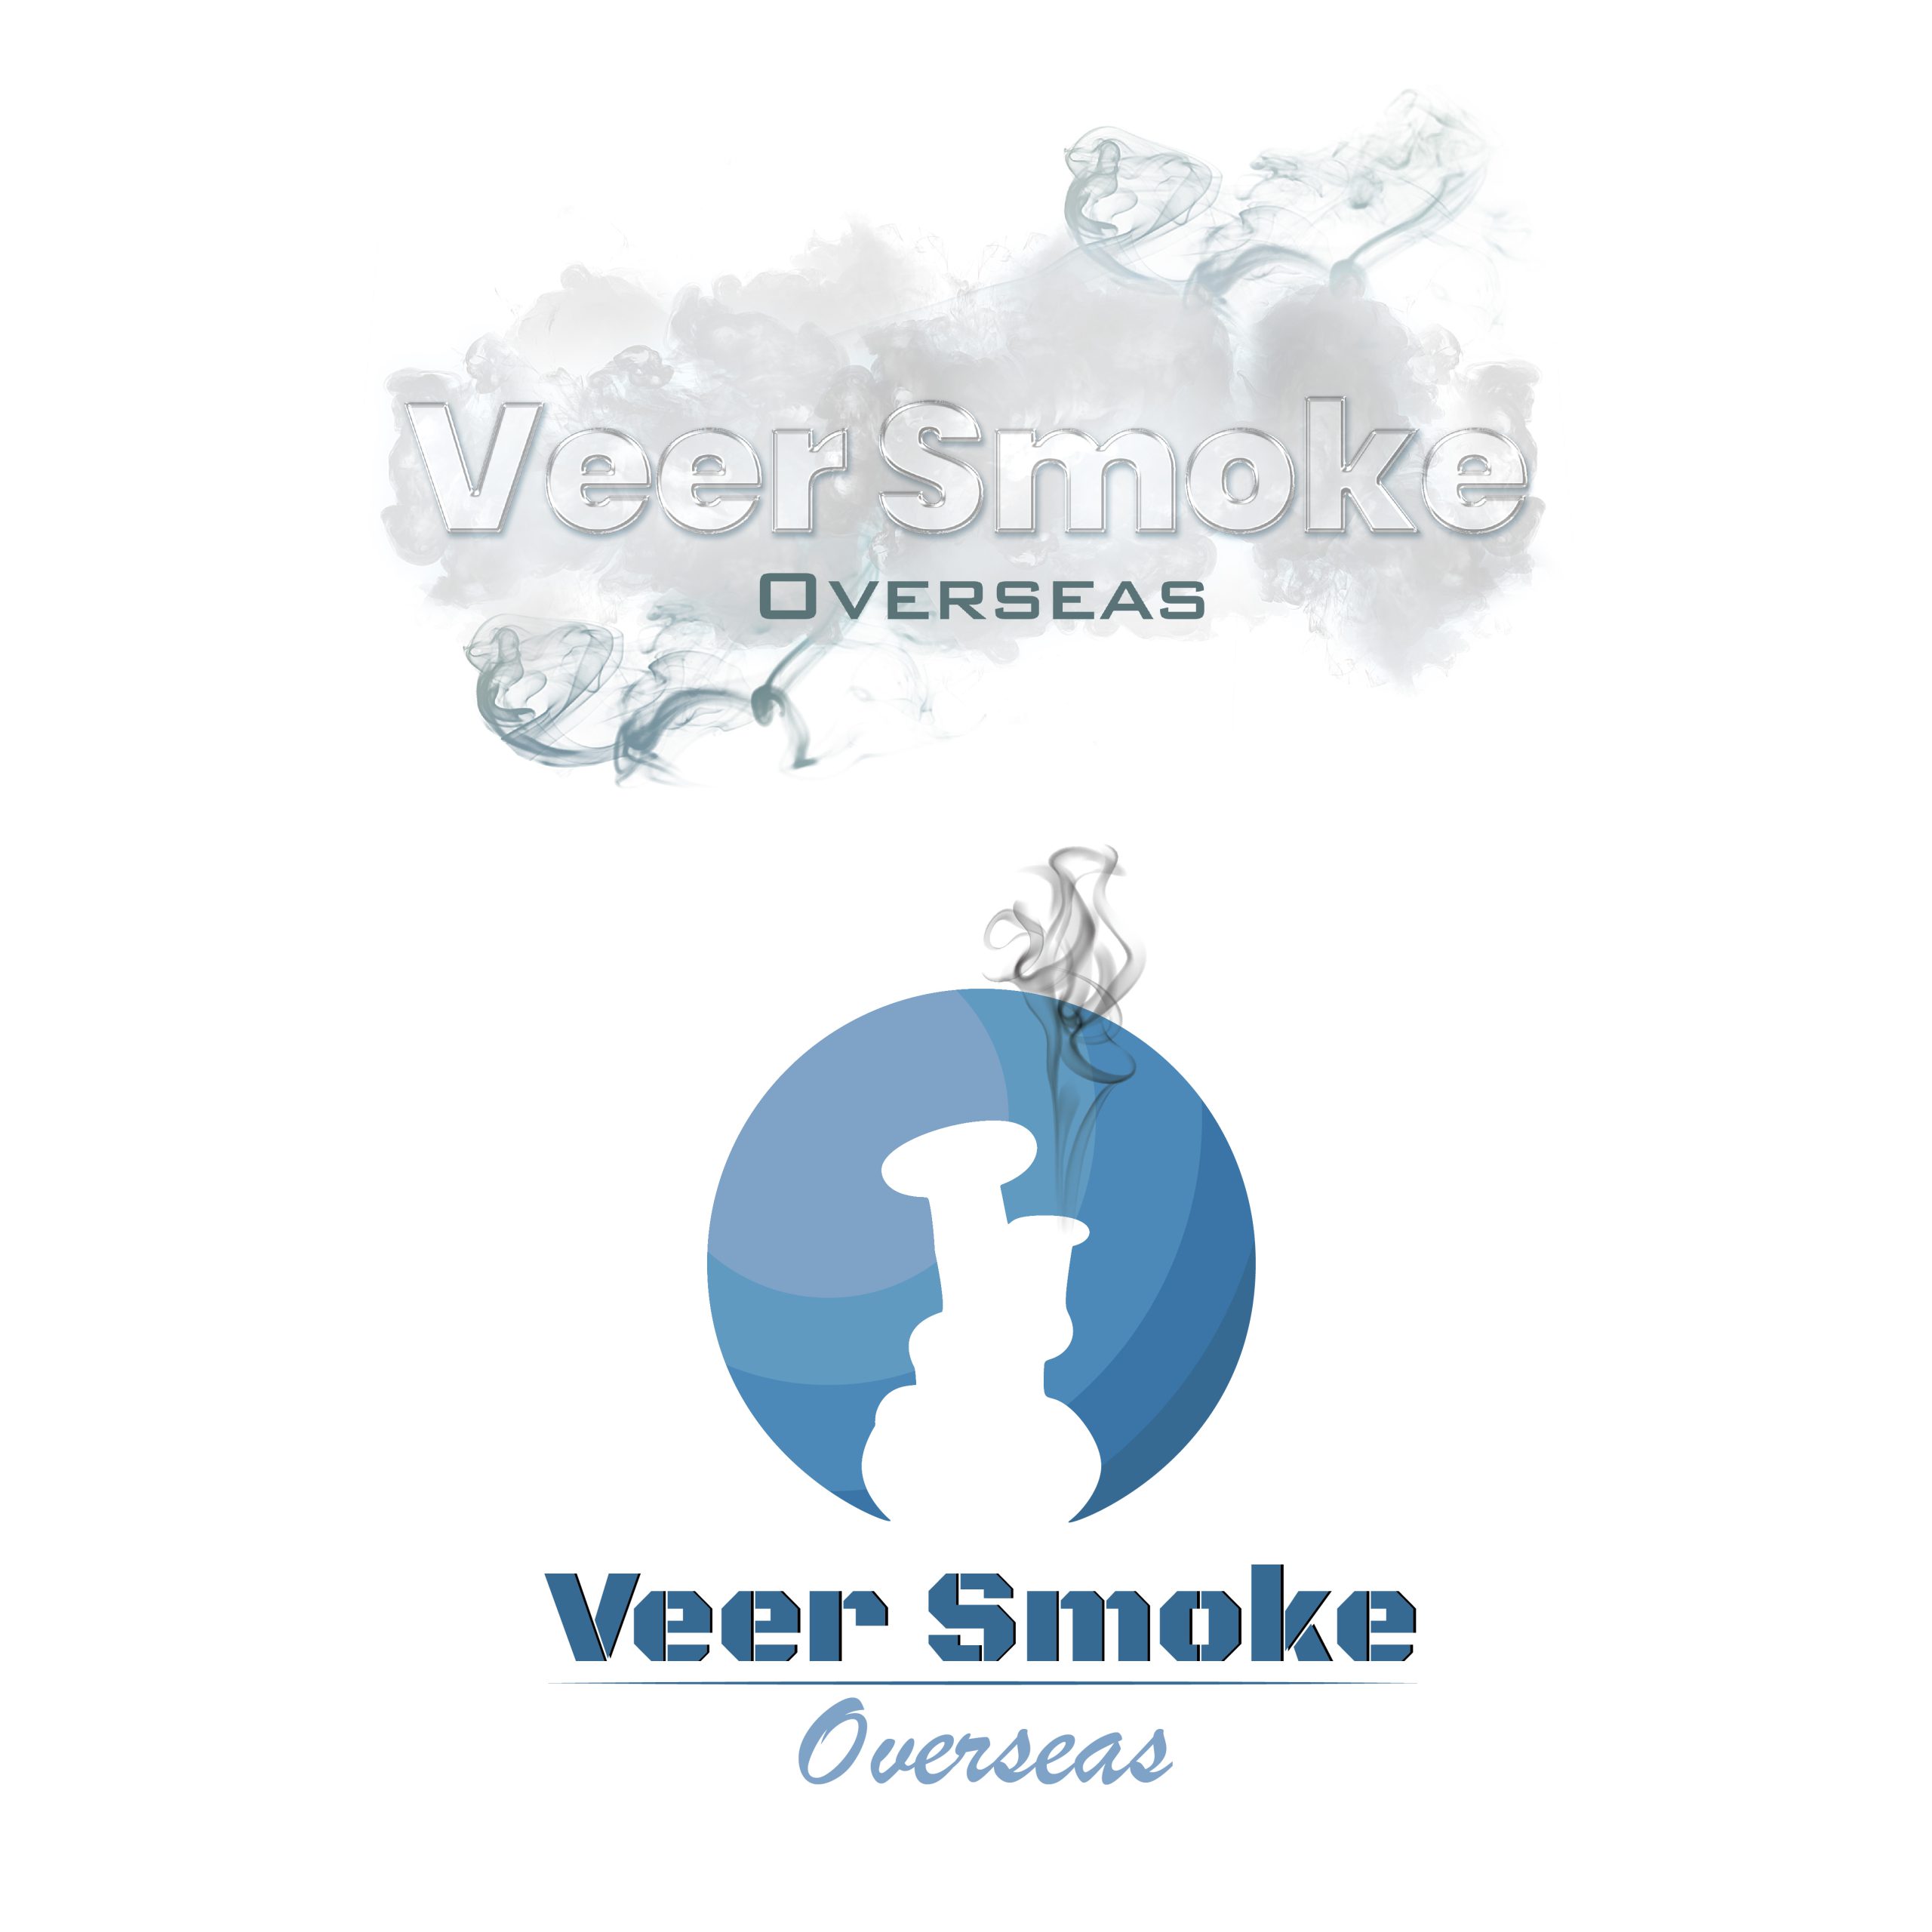  Veer Smoke Overseas